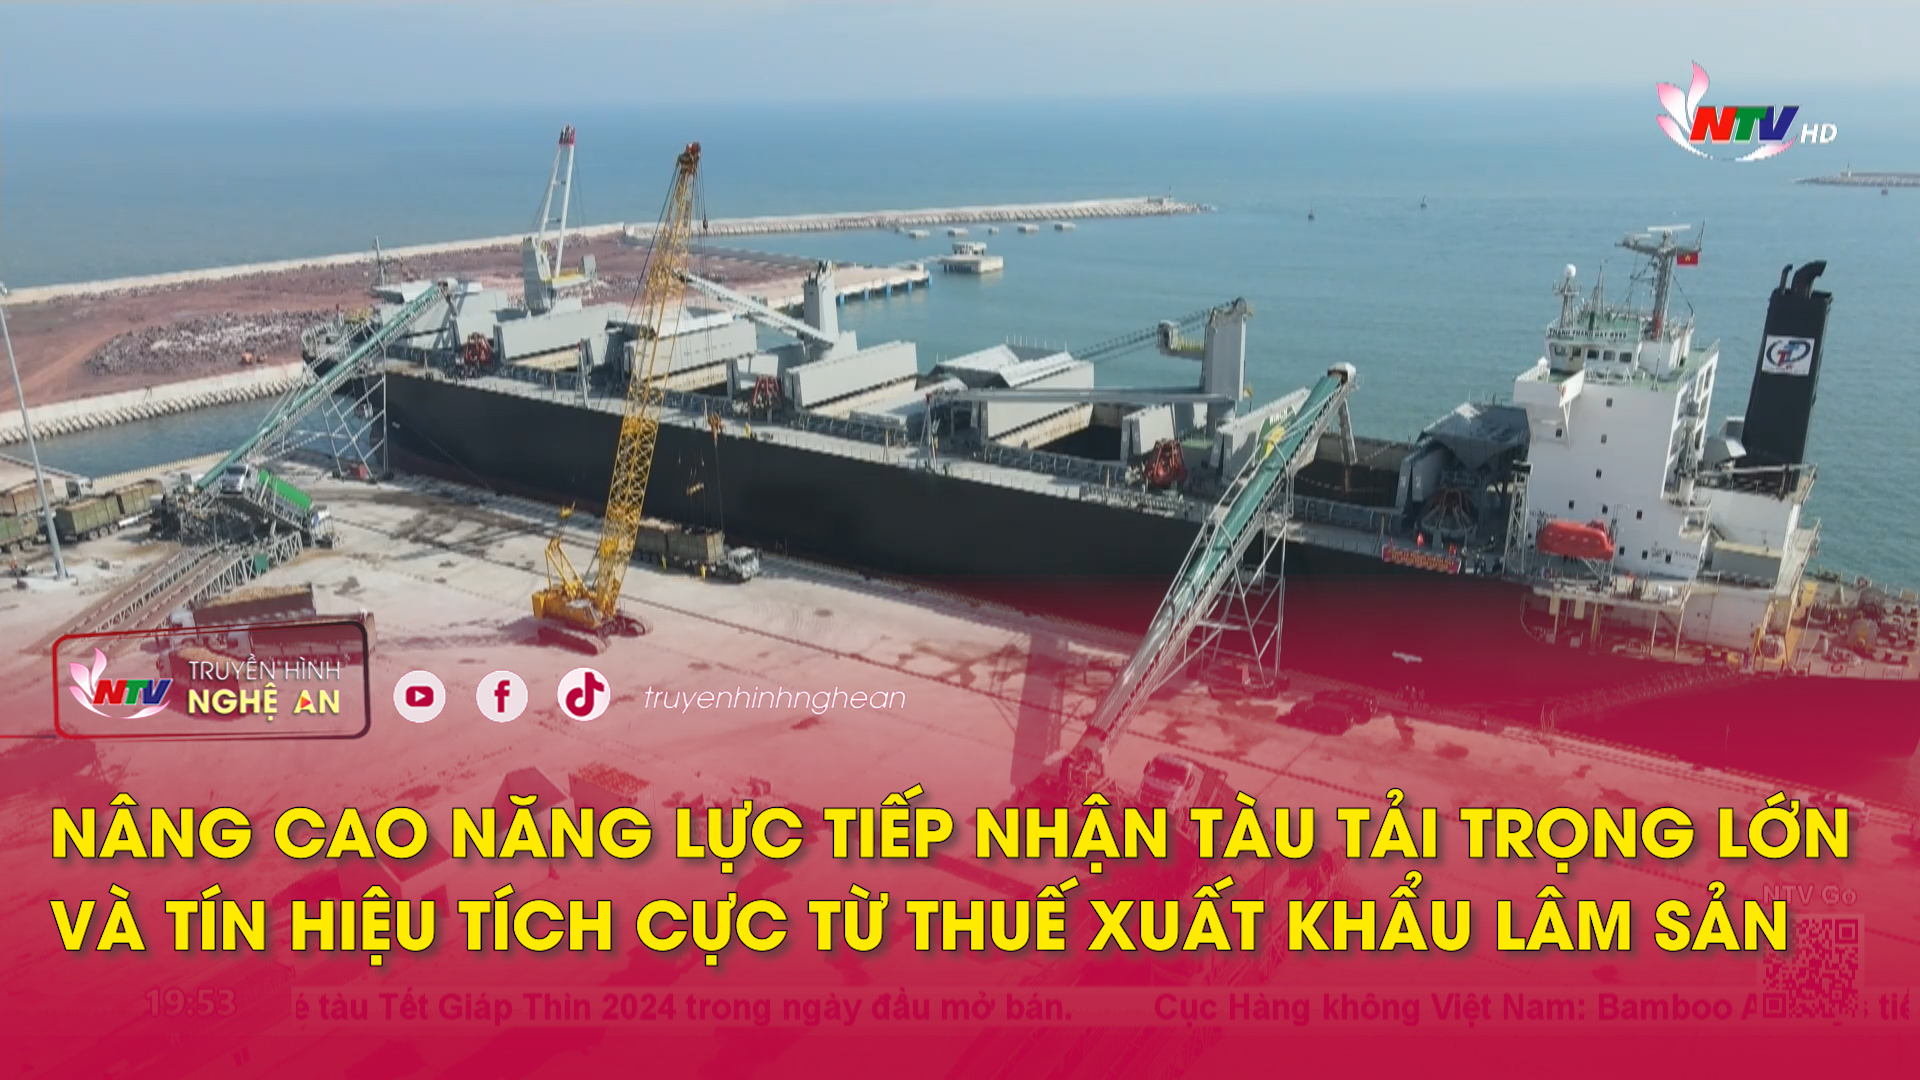 Nâng cao năng lực tiếp nhận tàu tải trọng lớn và tín hiệu tích cực từ thuế xuất khẩu lâm sản